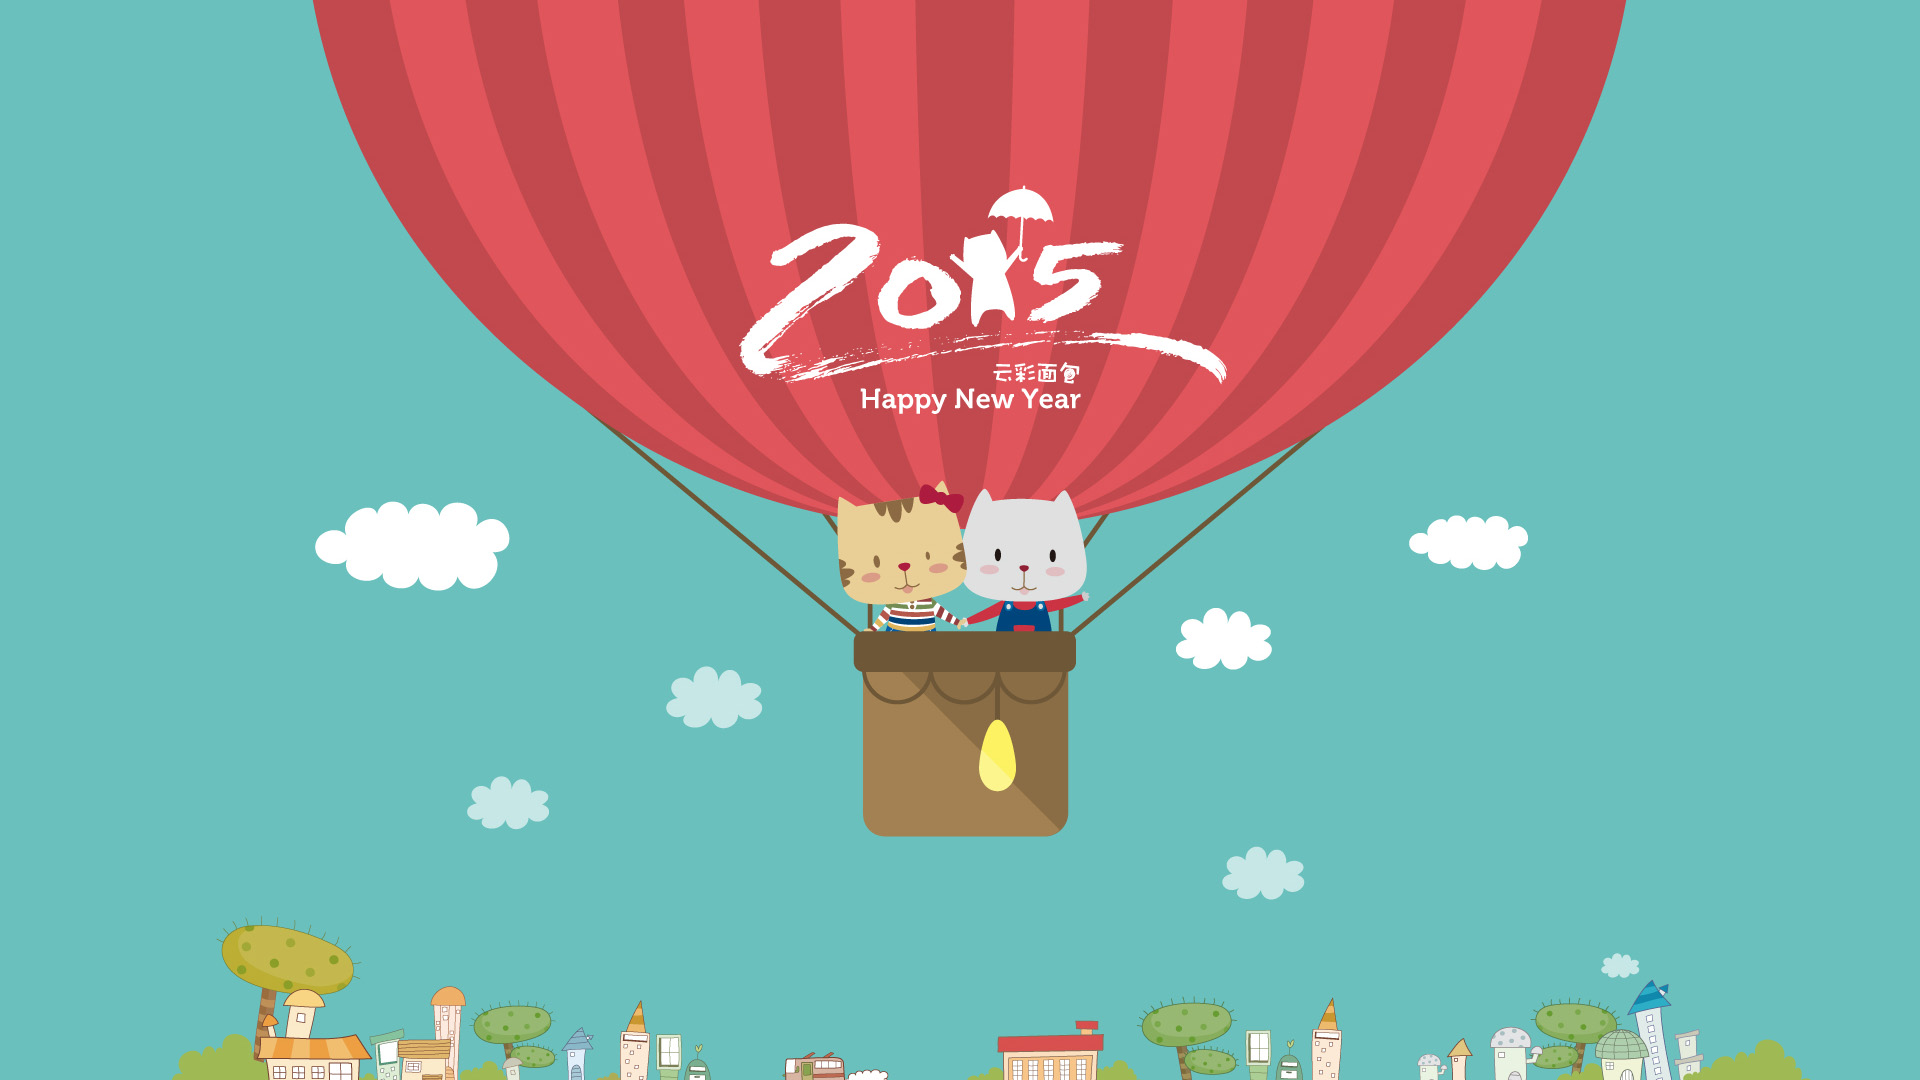 云彩面包,新年快乐Happy New Year,2015年元旦快乐,开心,小猫,热气球,壁纸